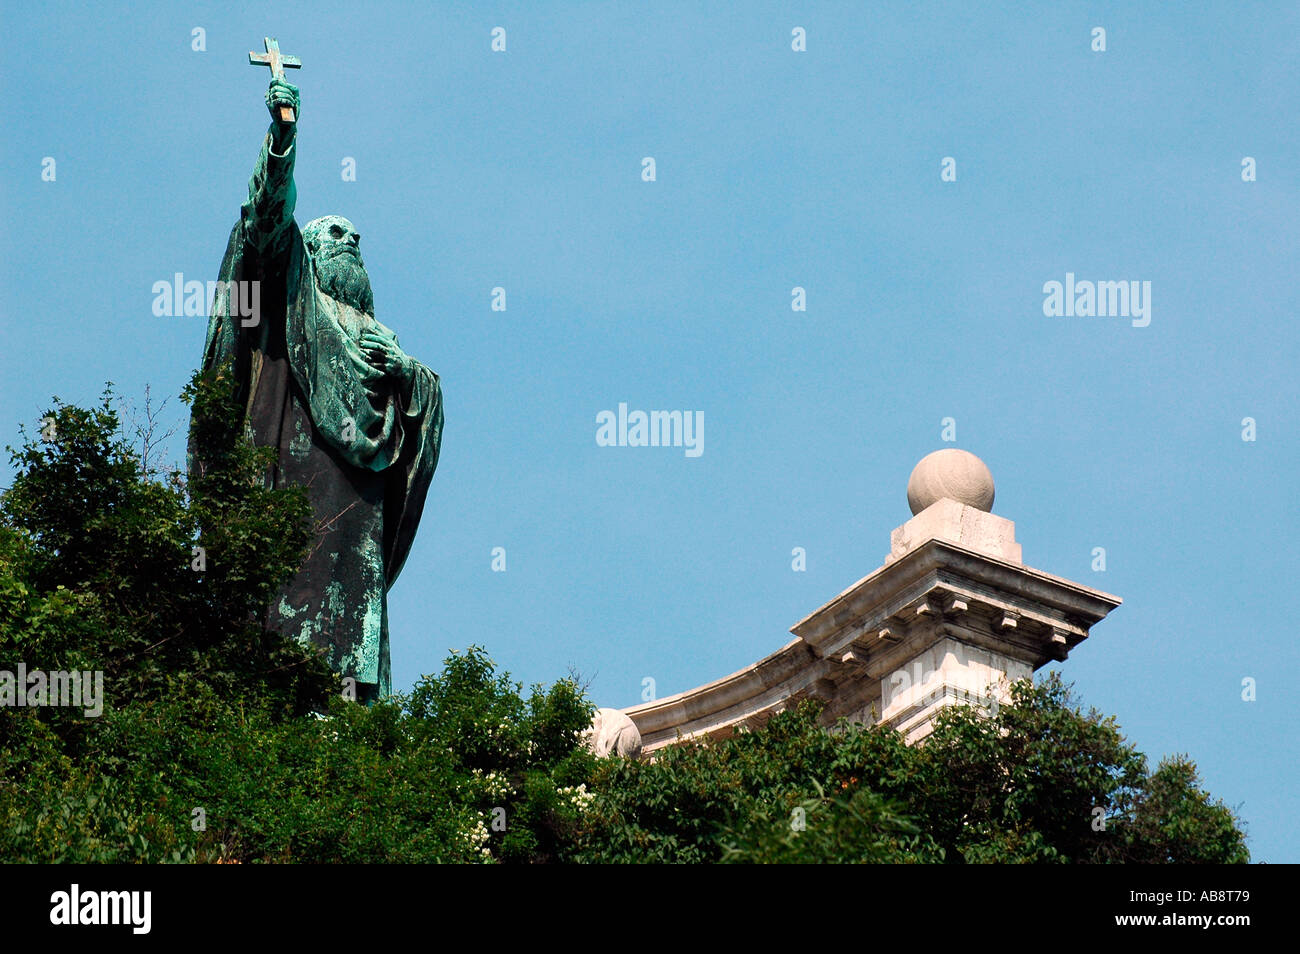 Statua di szt gellert, il primo vescovo ungherese e il comandante del primo re ungherese, Santo Stefano si trova sulla collina Gellert Budapest Ungheria Foto Stock